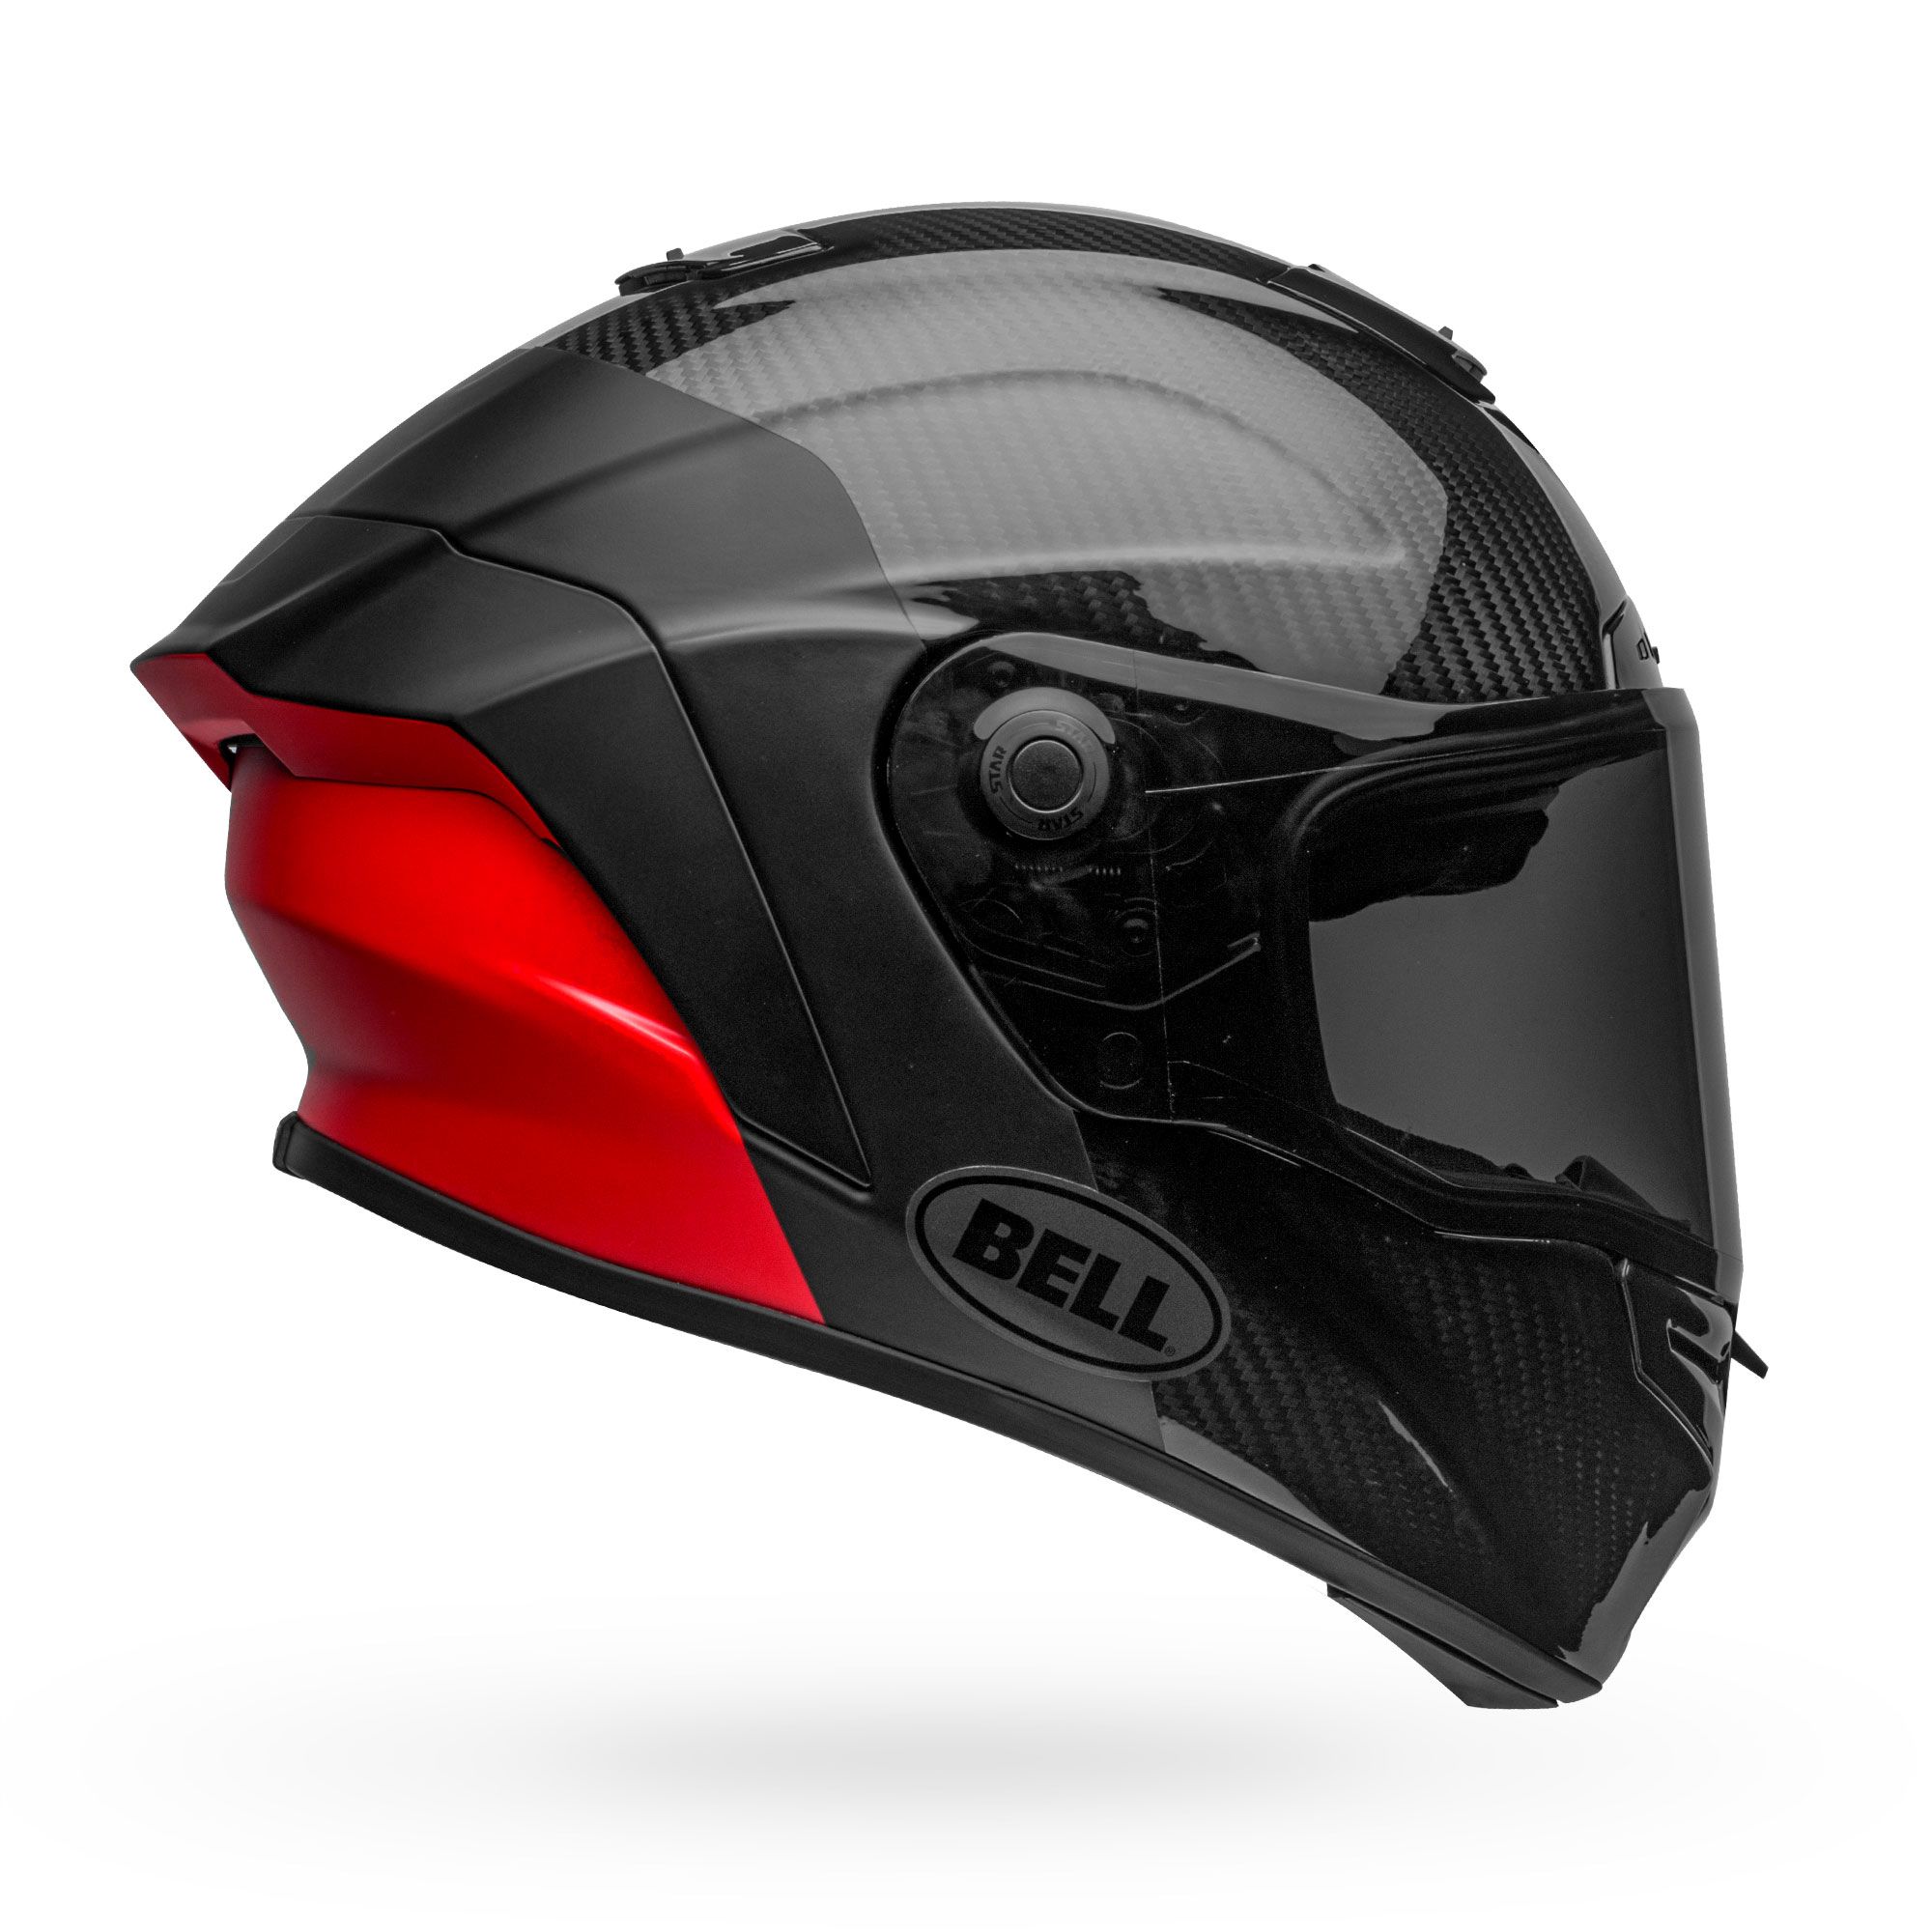 Full Face Helmets, Street Bike Helmets | Bell Helmets